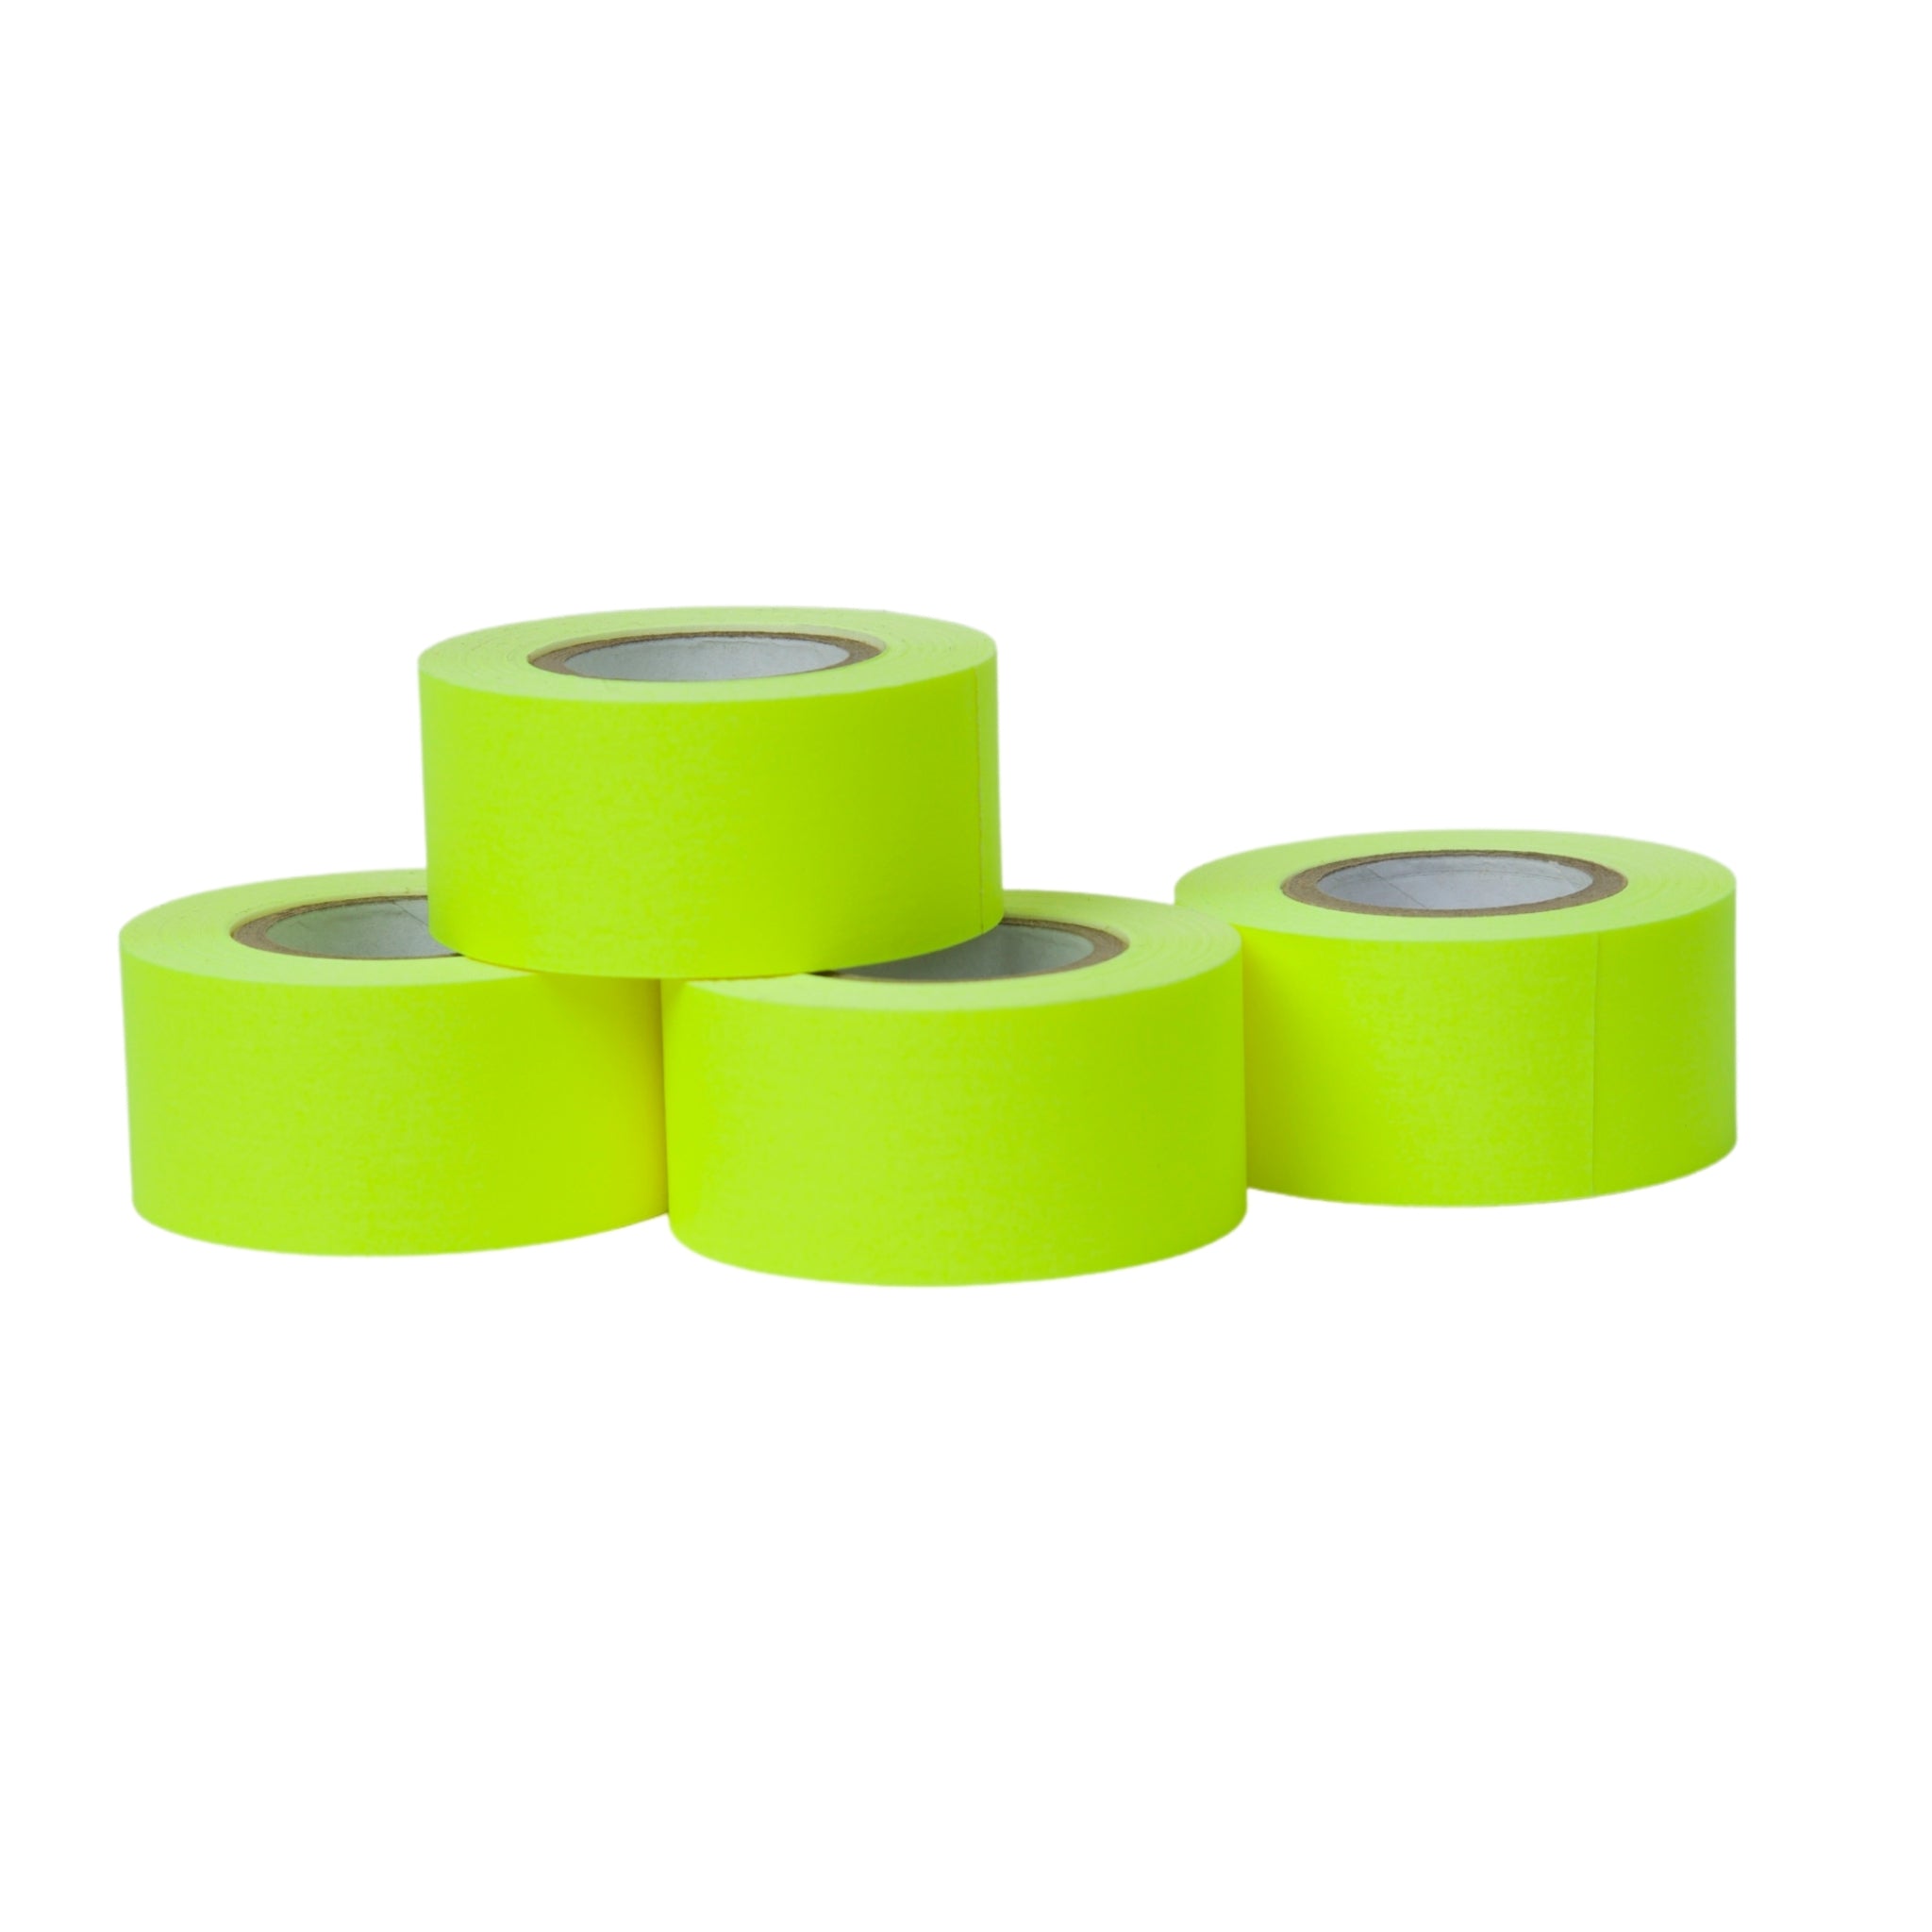 1" x 360" Artist Tape - 4 Pack Fluorescent Yellow